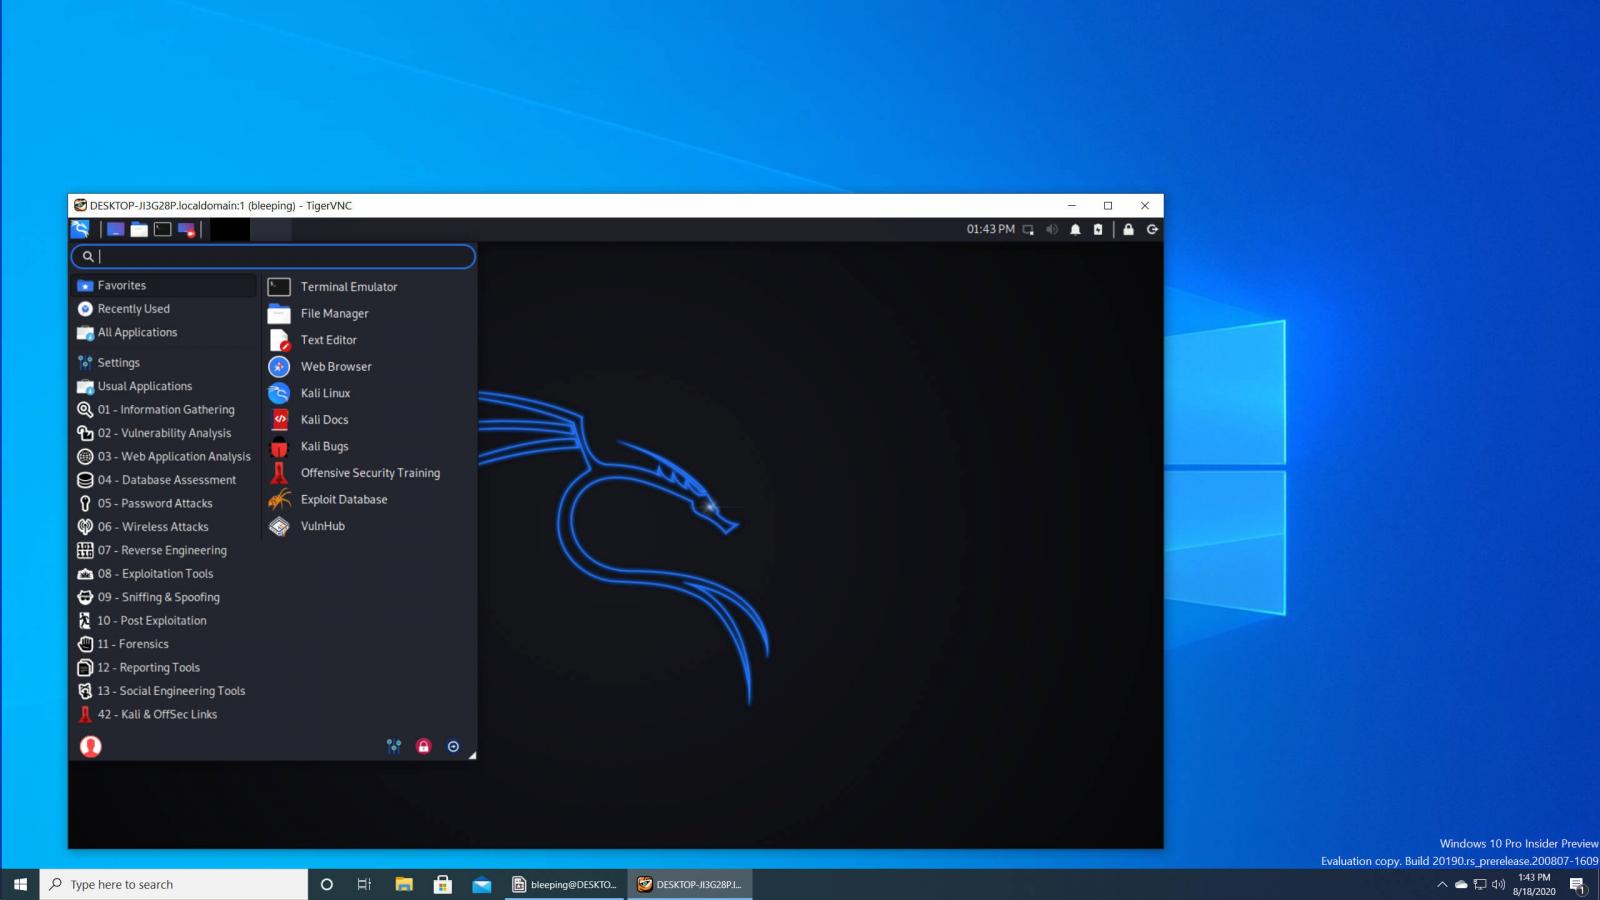 Kali Linux Desktop in Windows 10